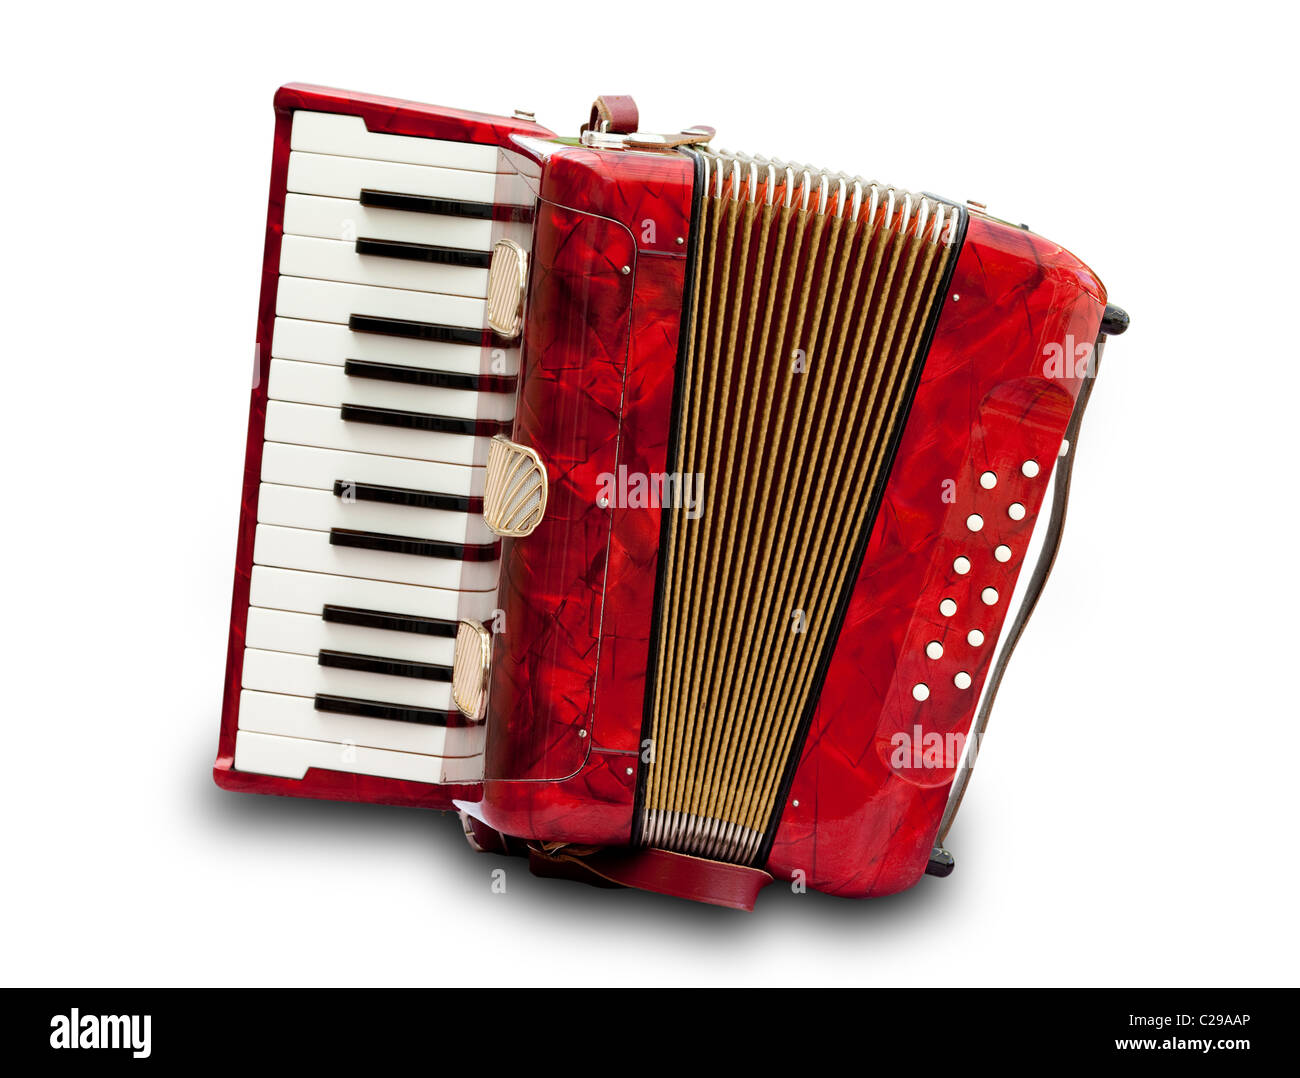 Petit accordéon rétro rouge isolé sur fond blanc Photo Stock - Alamy